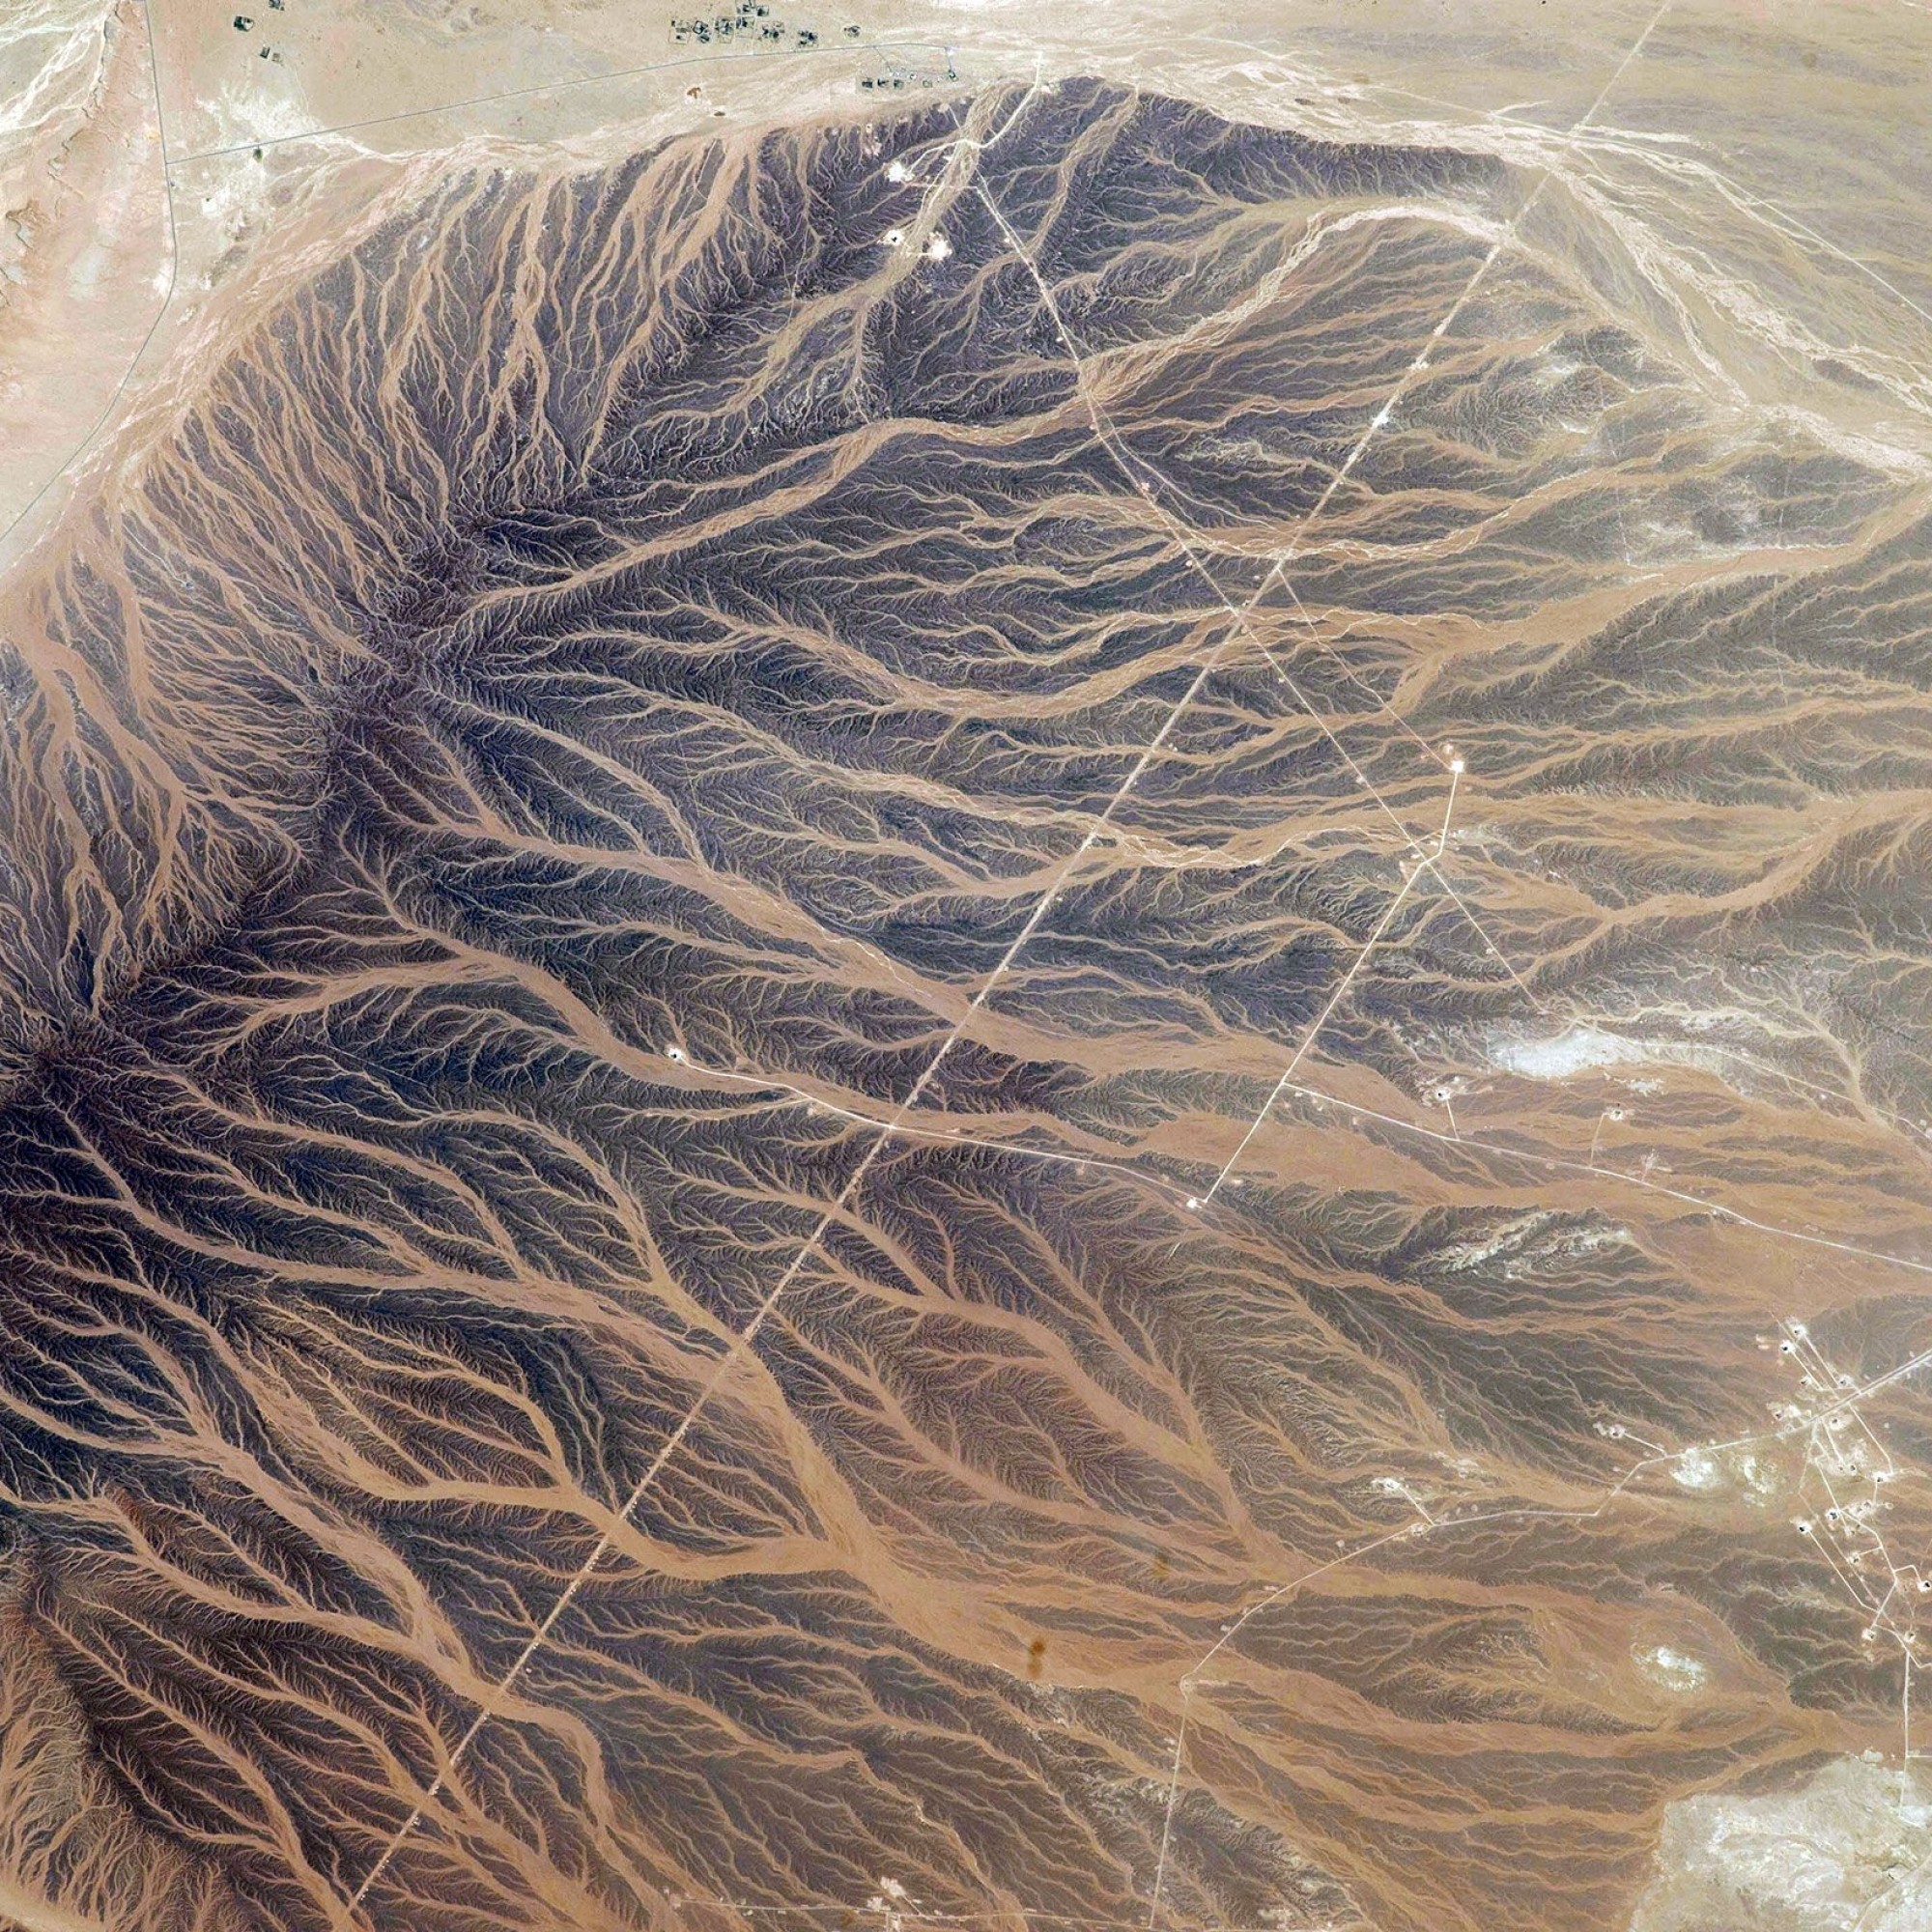 Wasser und Sand in Oman.